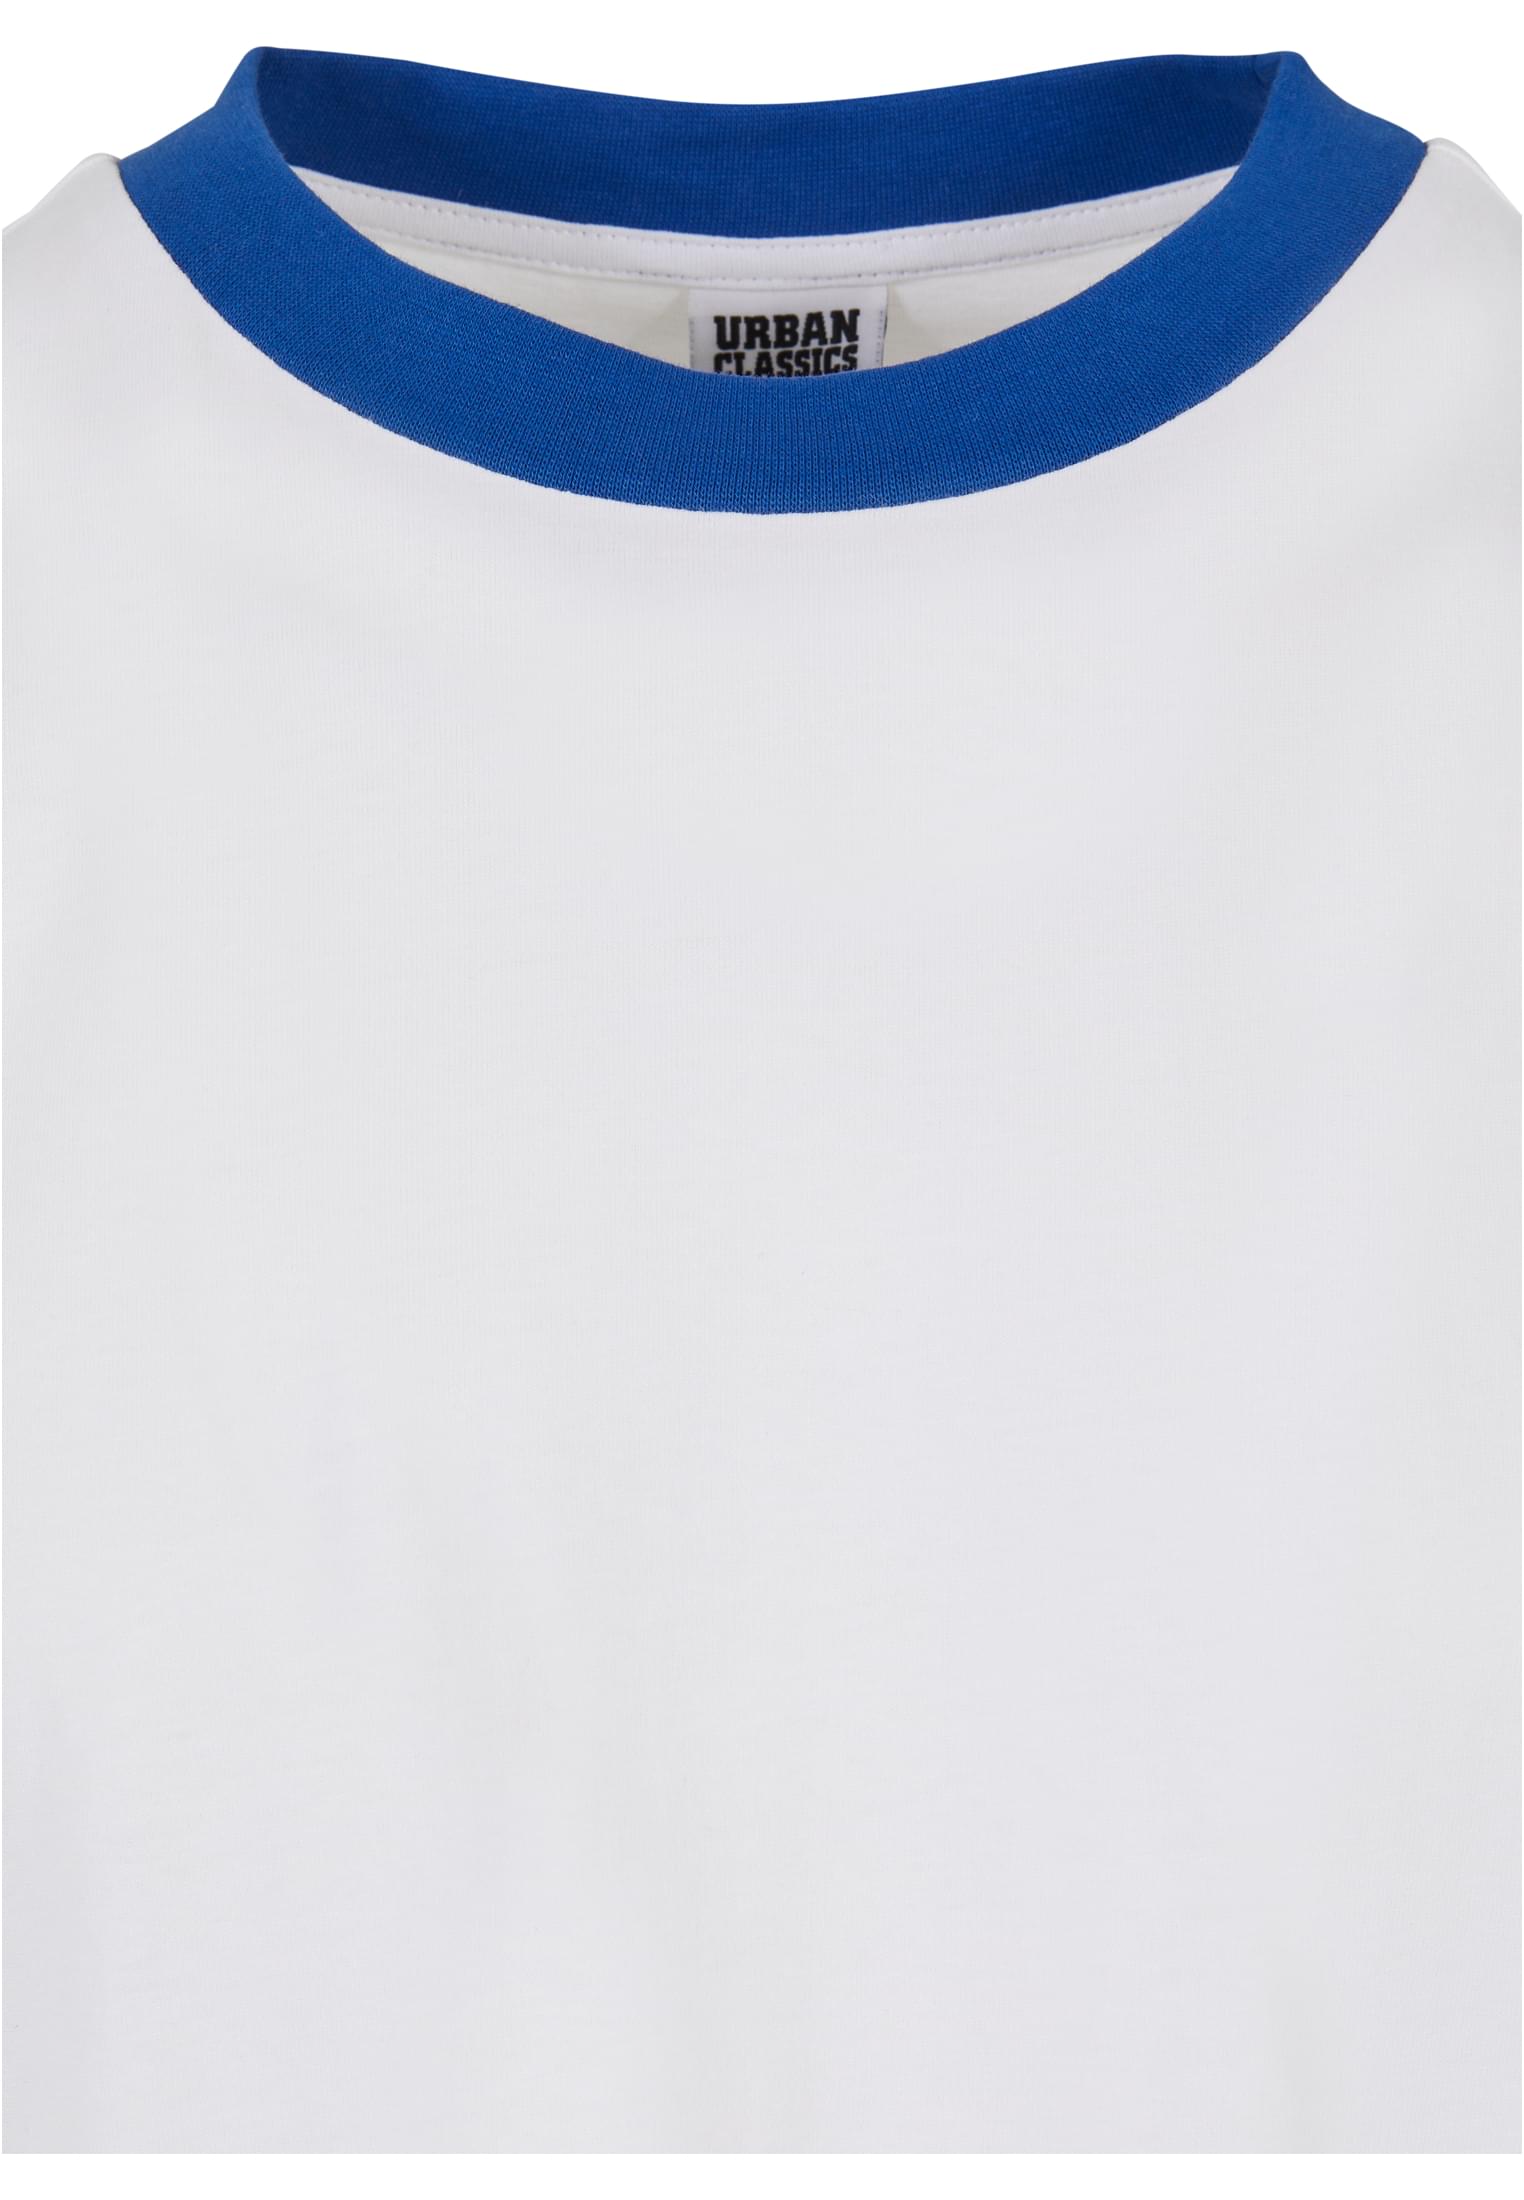 Classic Ringer T-Shirt - White/Blue